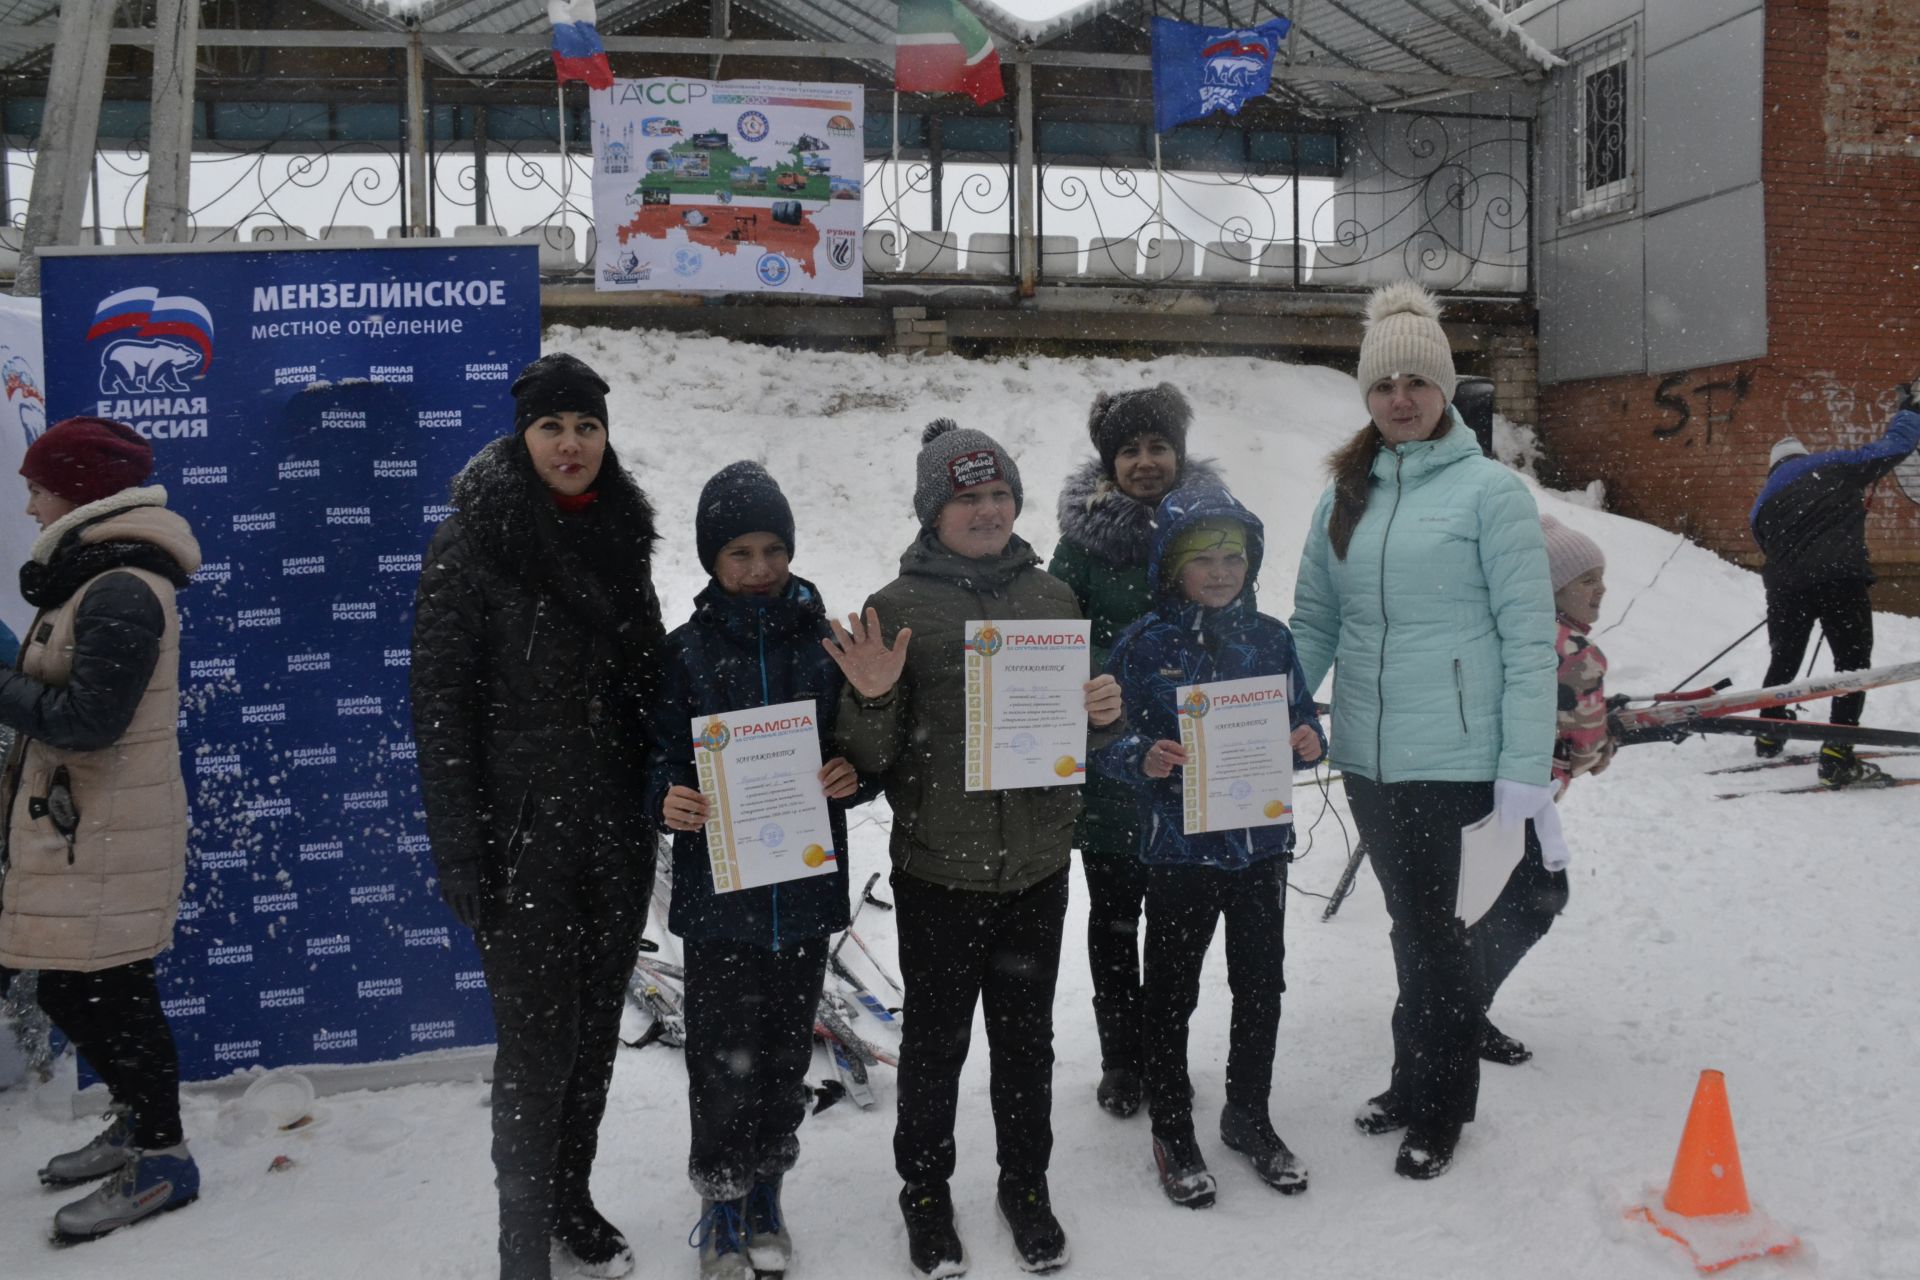 Открытие лыжного сезона 2019/2020 в Мензелинске